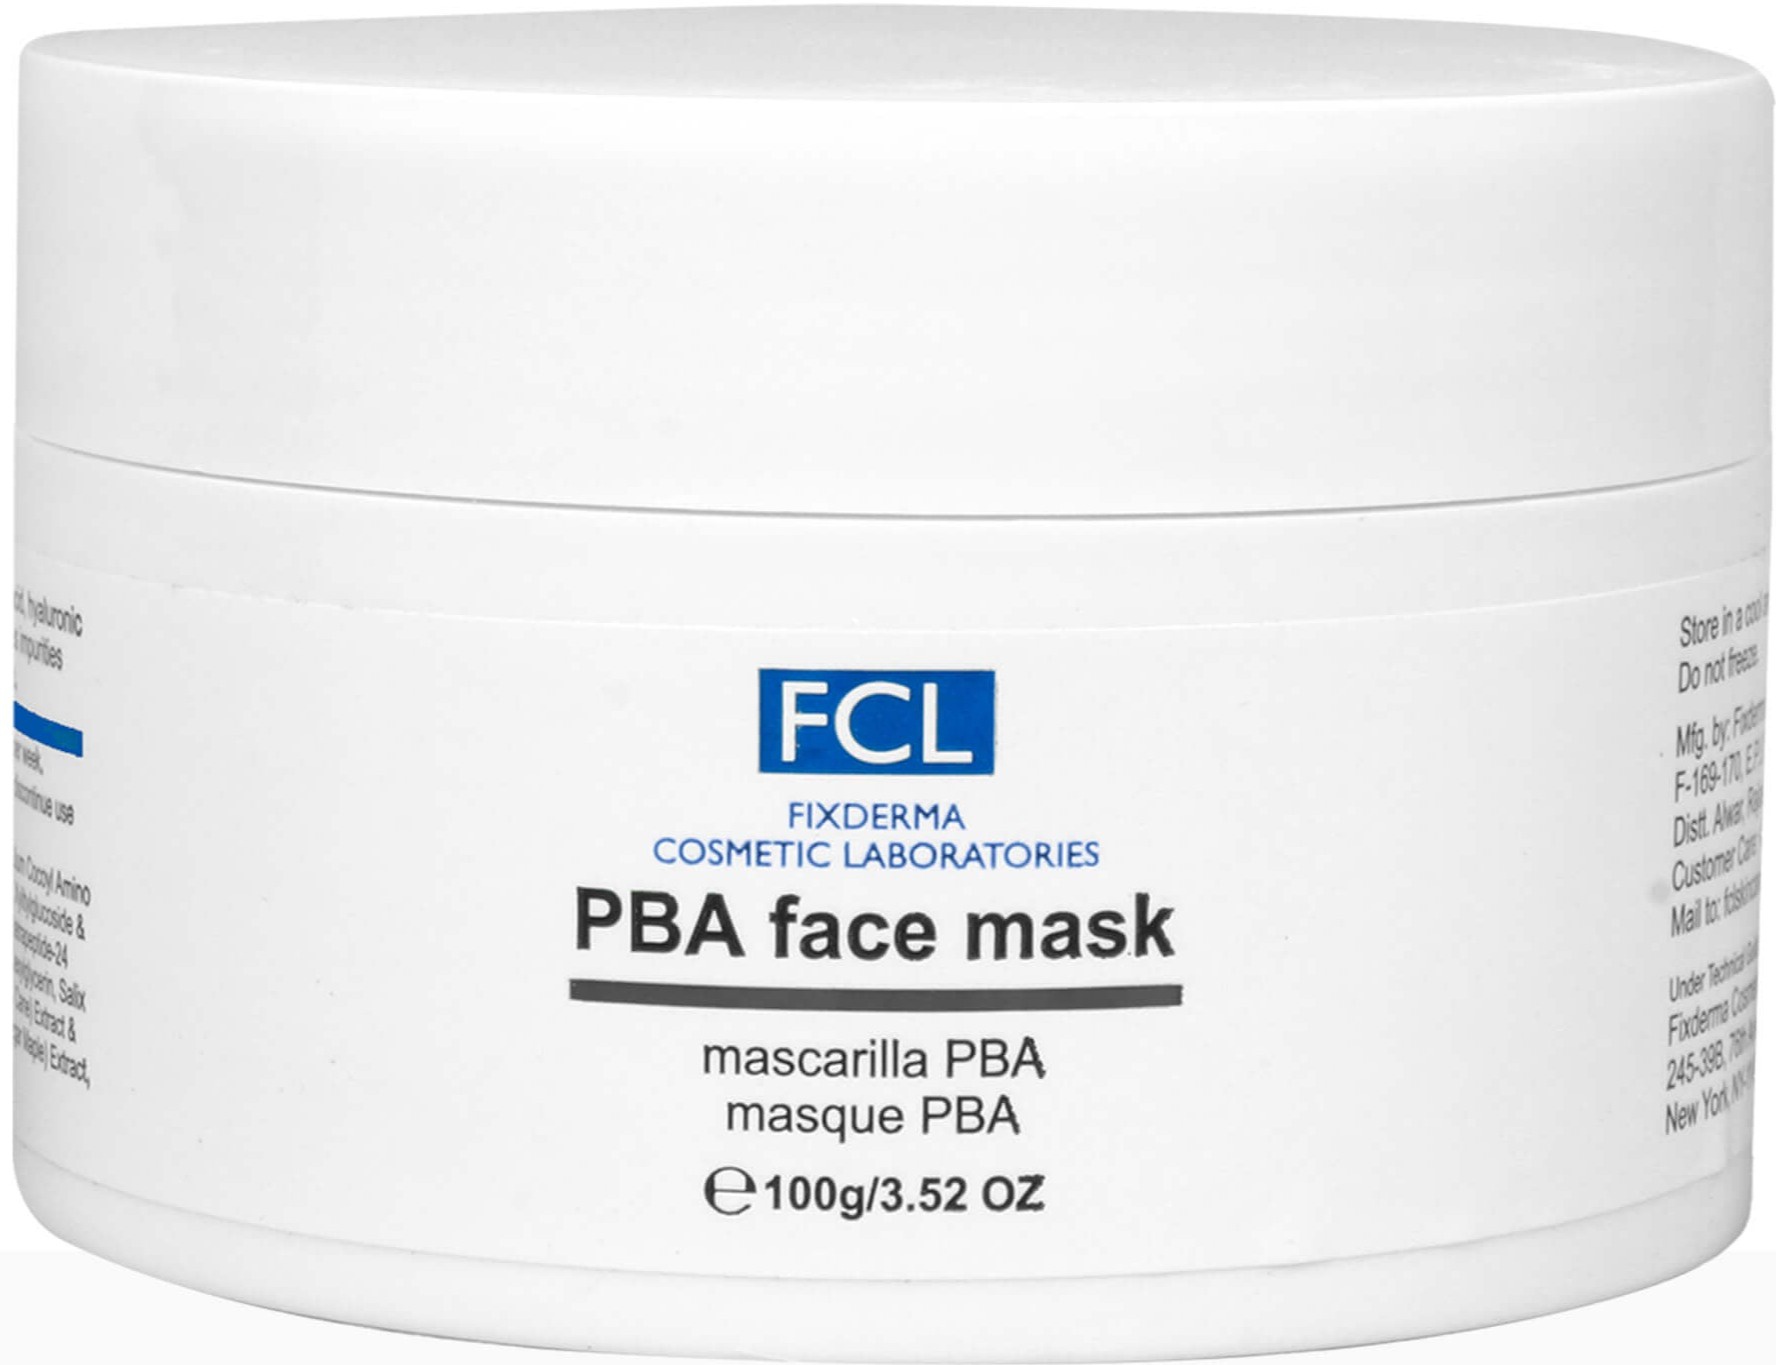 FCL Fixderma PBA Face Mask